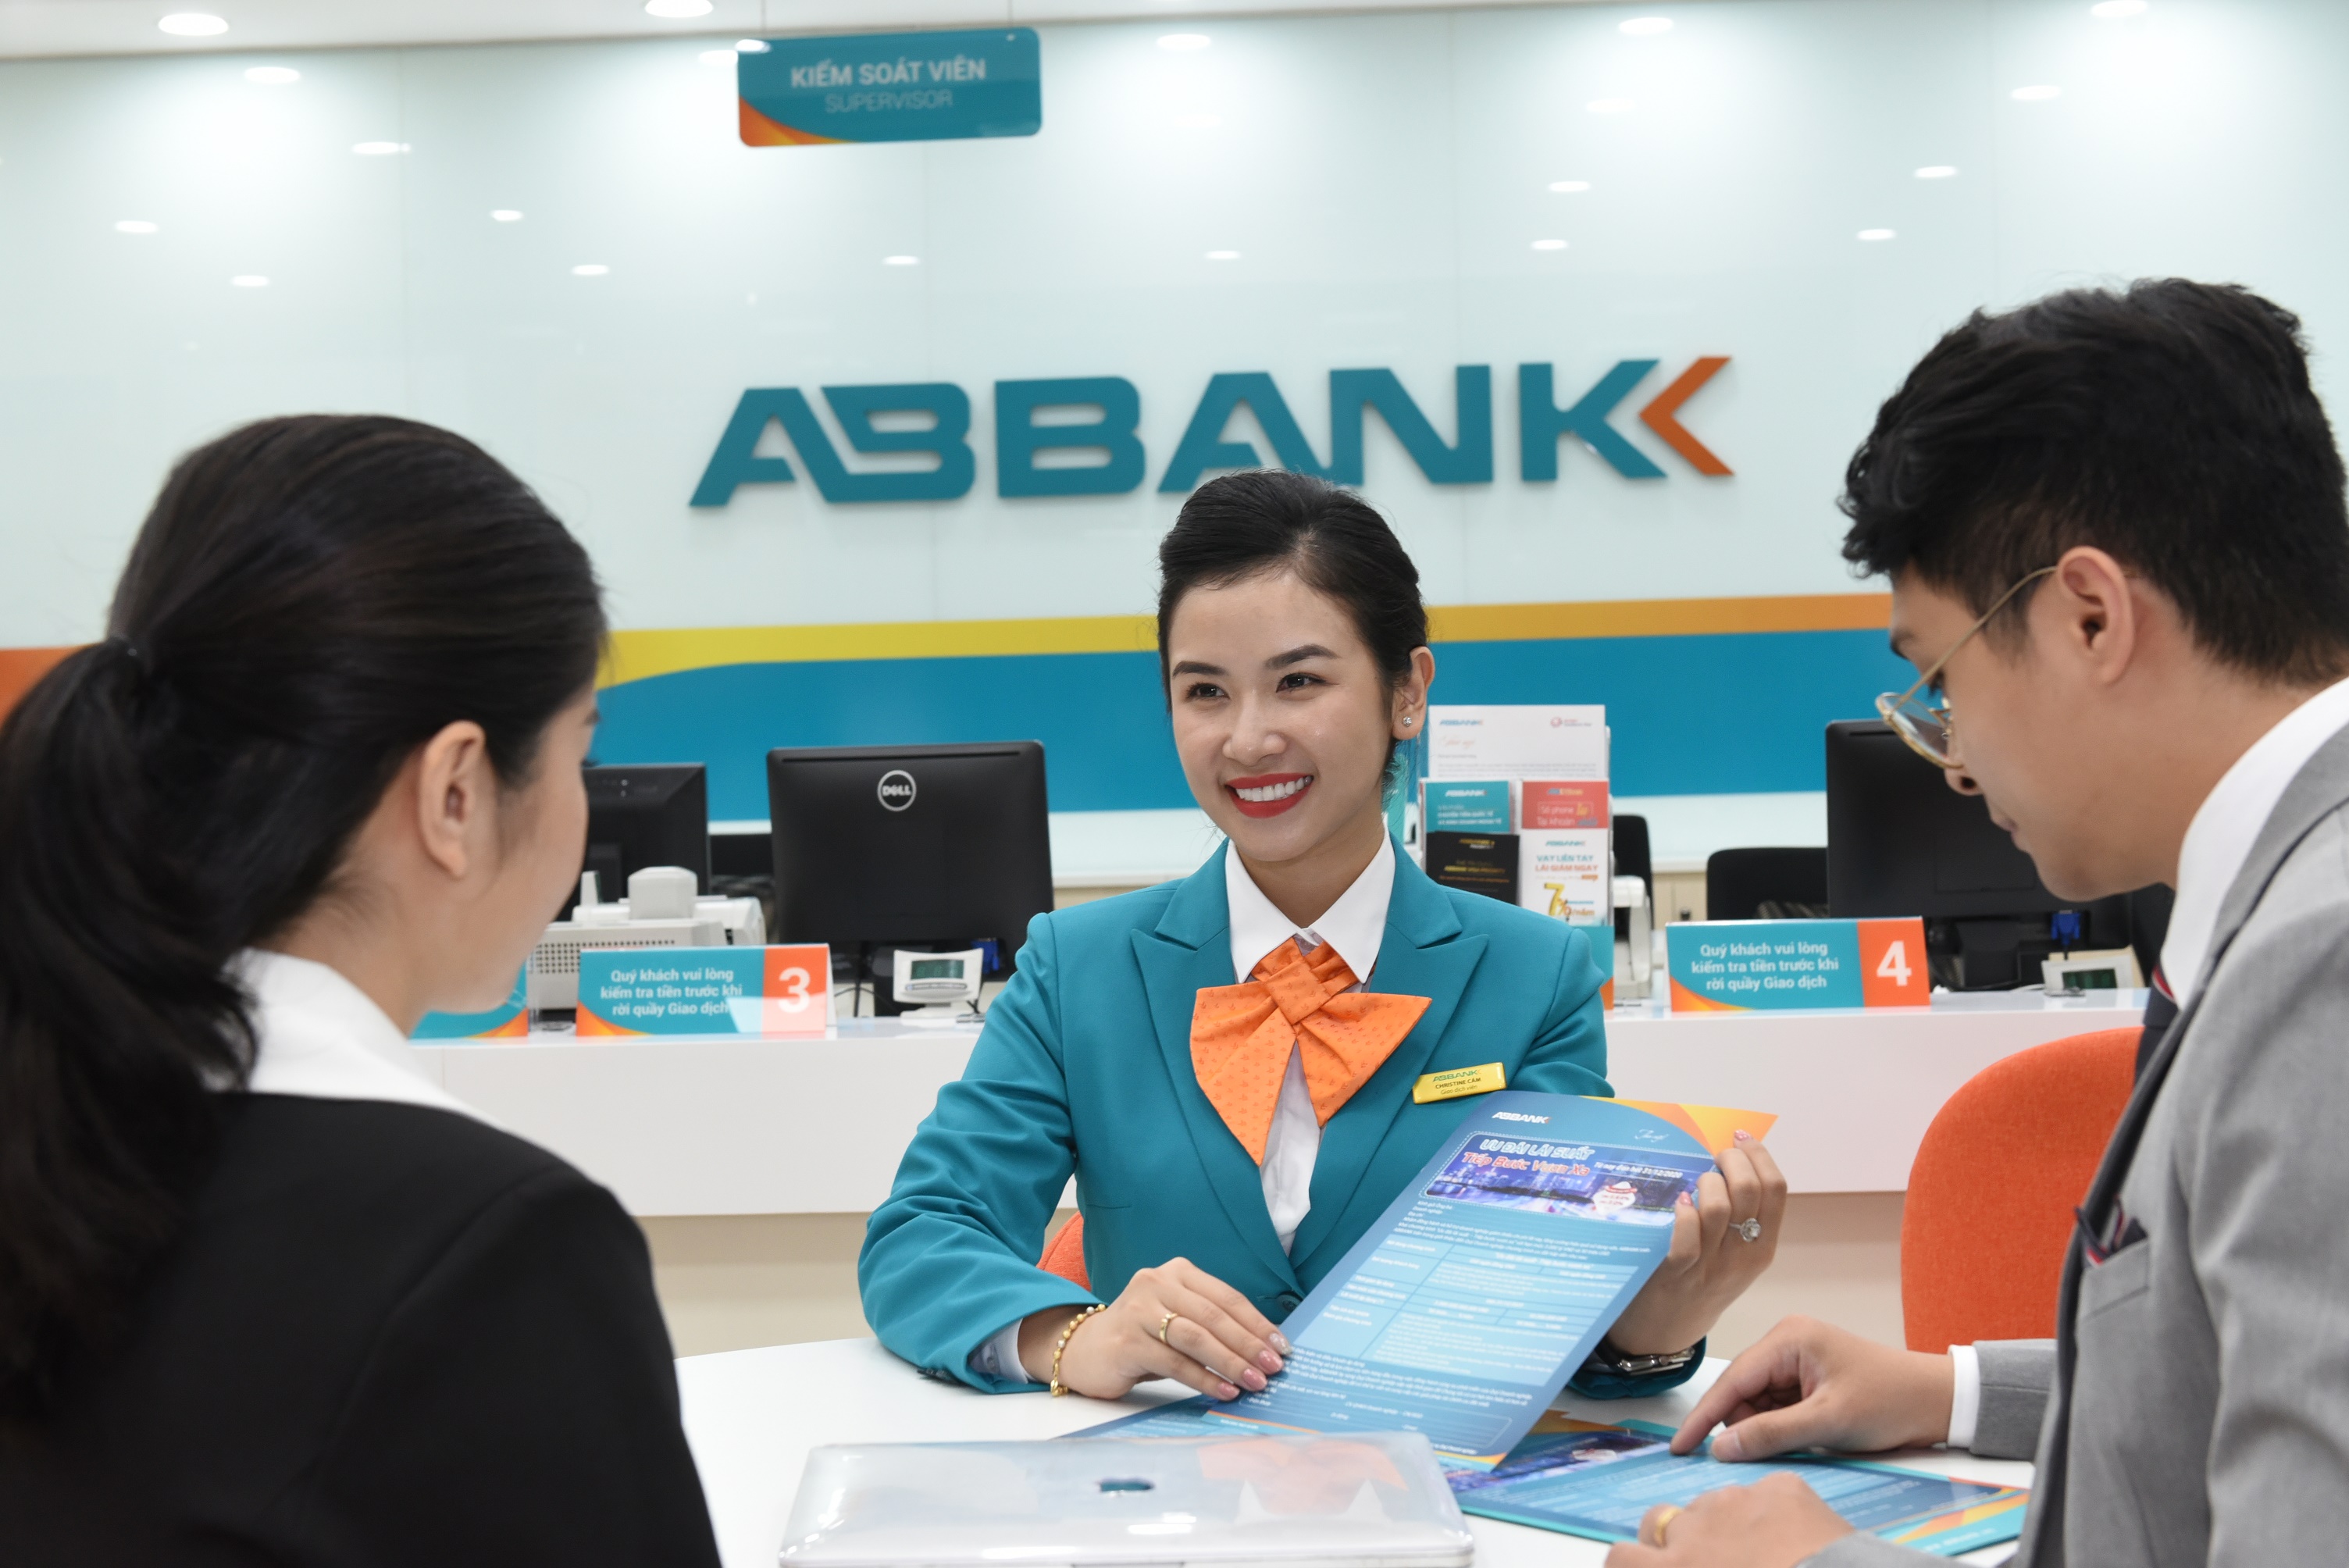 Hãy ngắm nhìn hình ảnh đẹp lung linh của ABBANK để khám phá những dịch vụ tài chính tuyệt vời và chuyên nghiệp mà ngân hàng cung cấp.